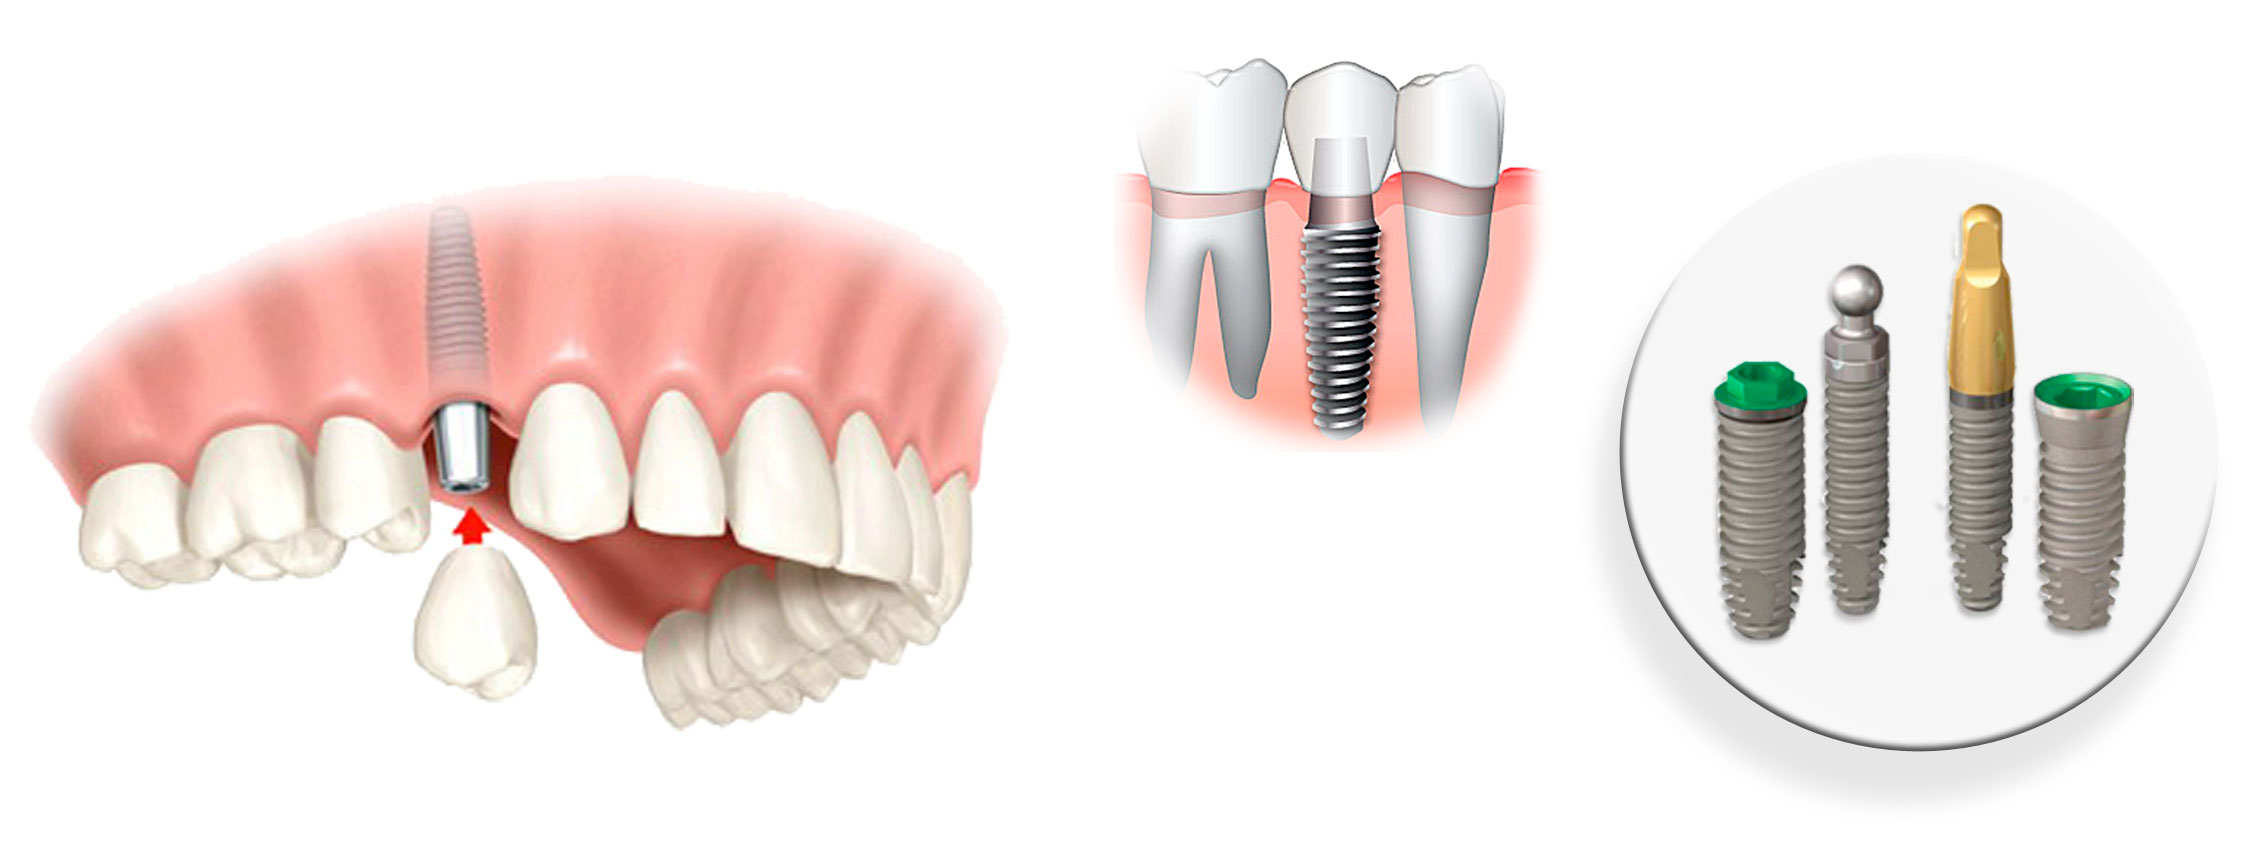 Ученые выяснили, какие лекарства не стоит пить перед имплантацией зубов - 3